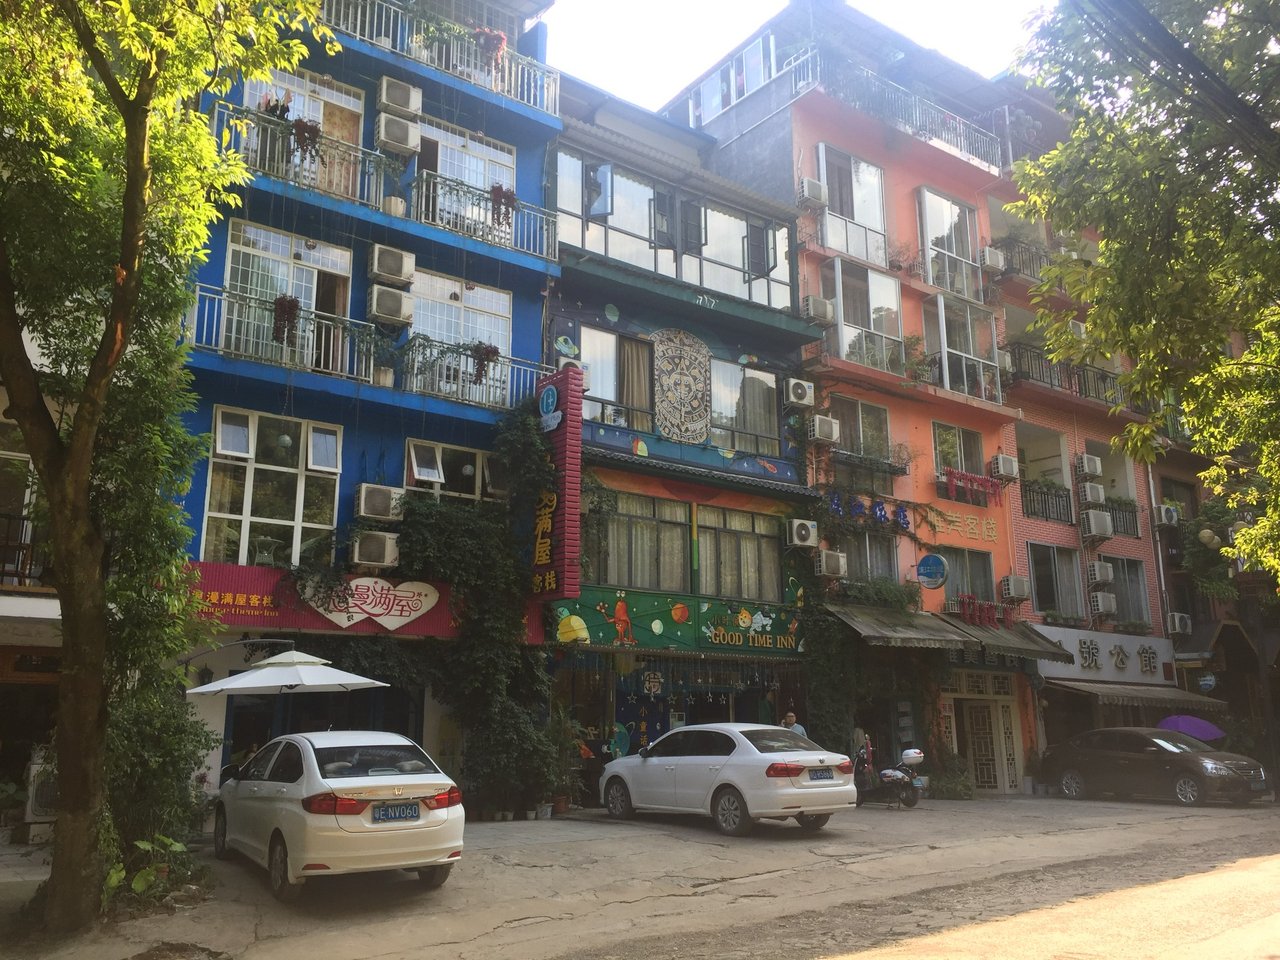 Yangshuo, Guilin, Guangxi, China